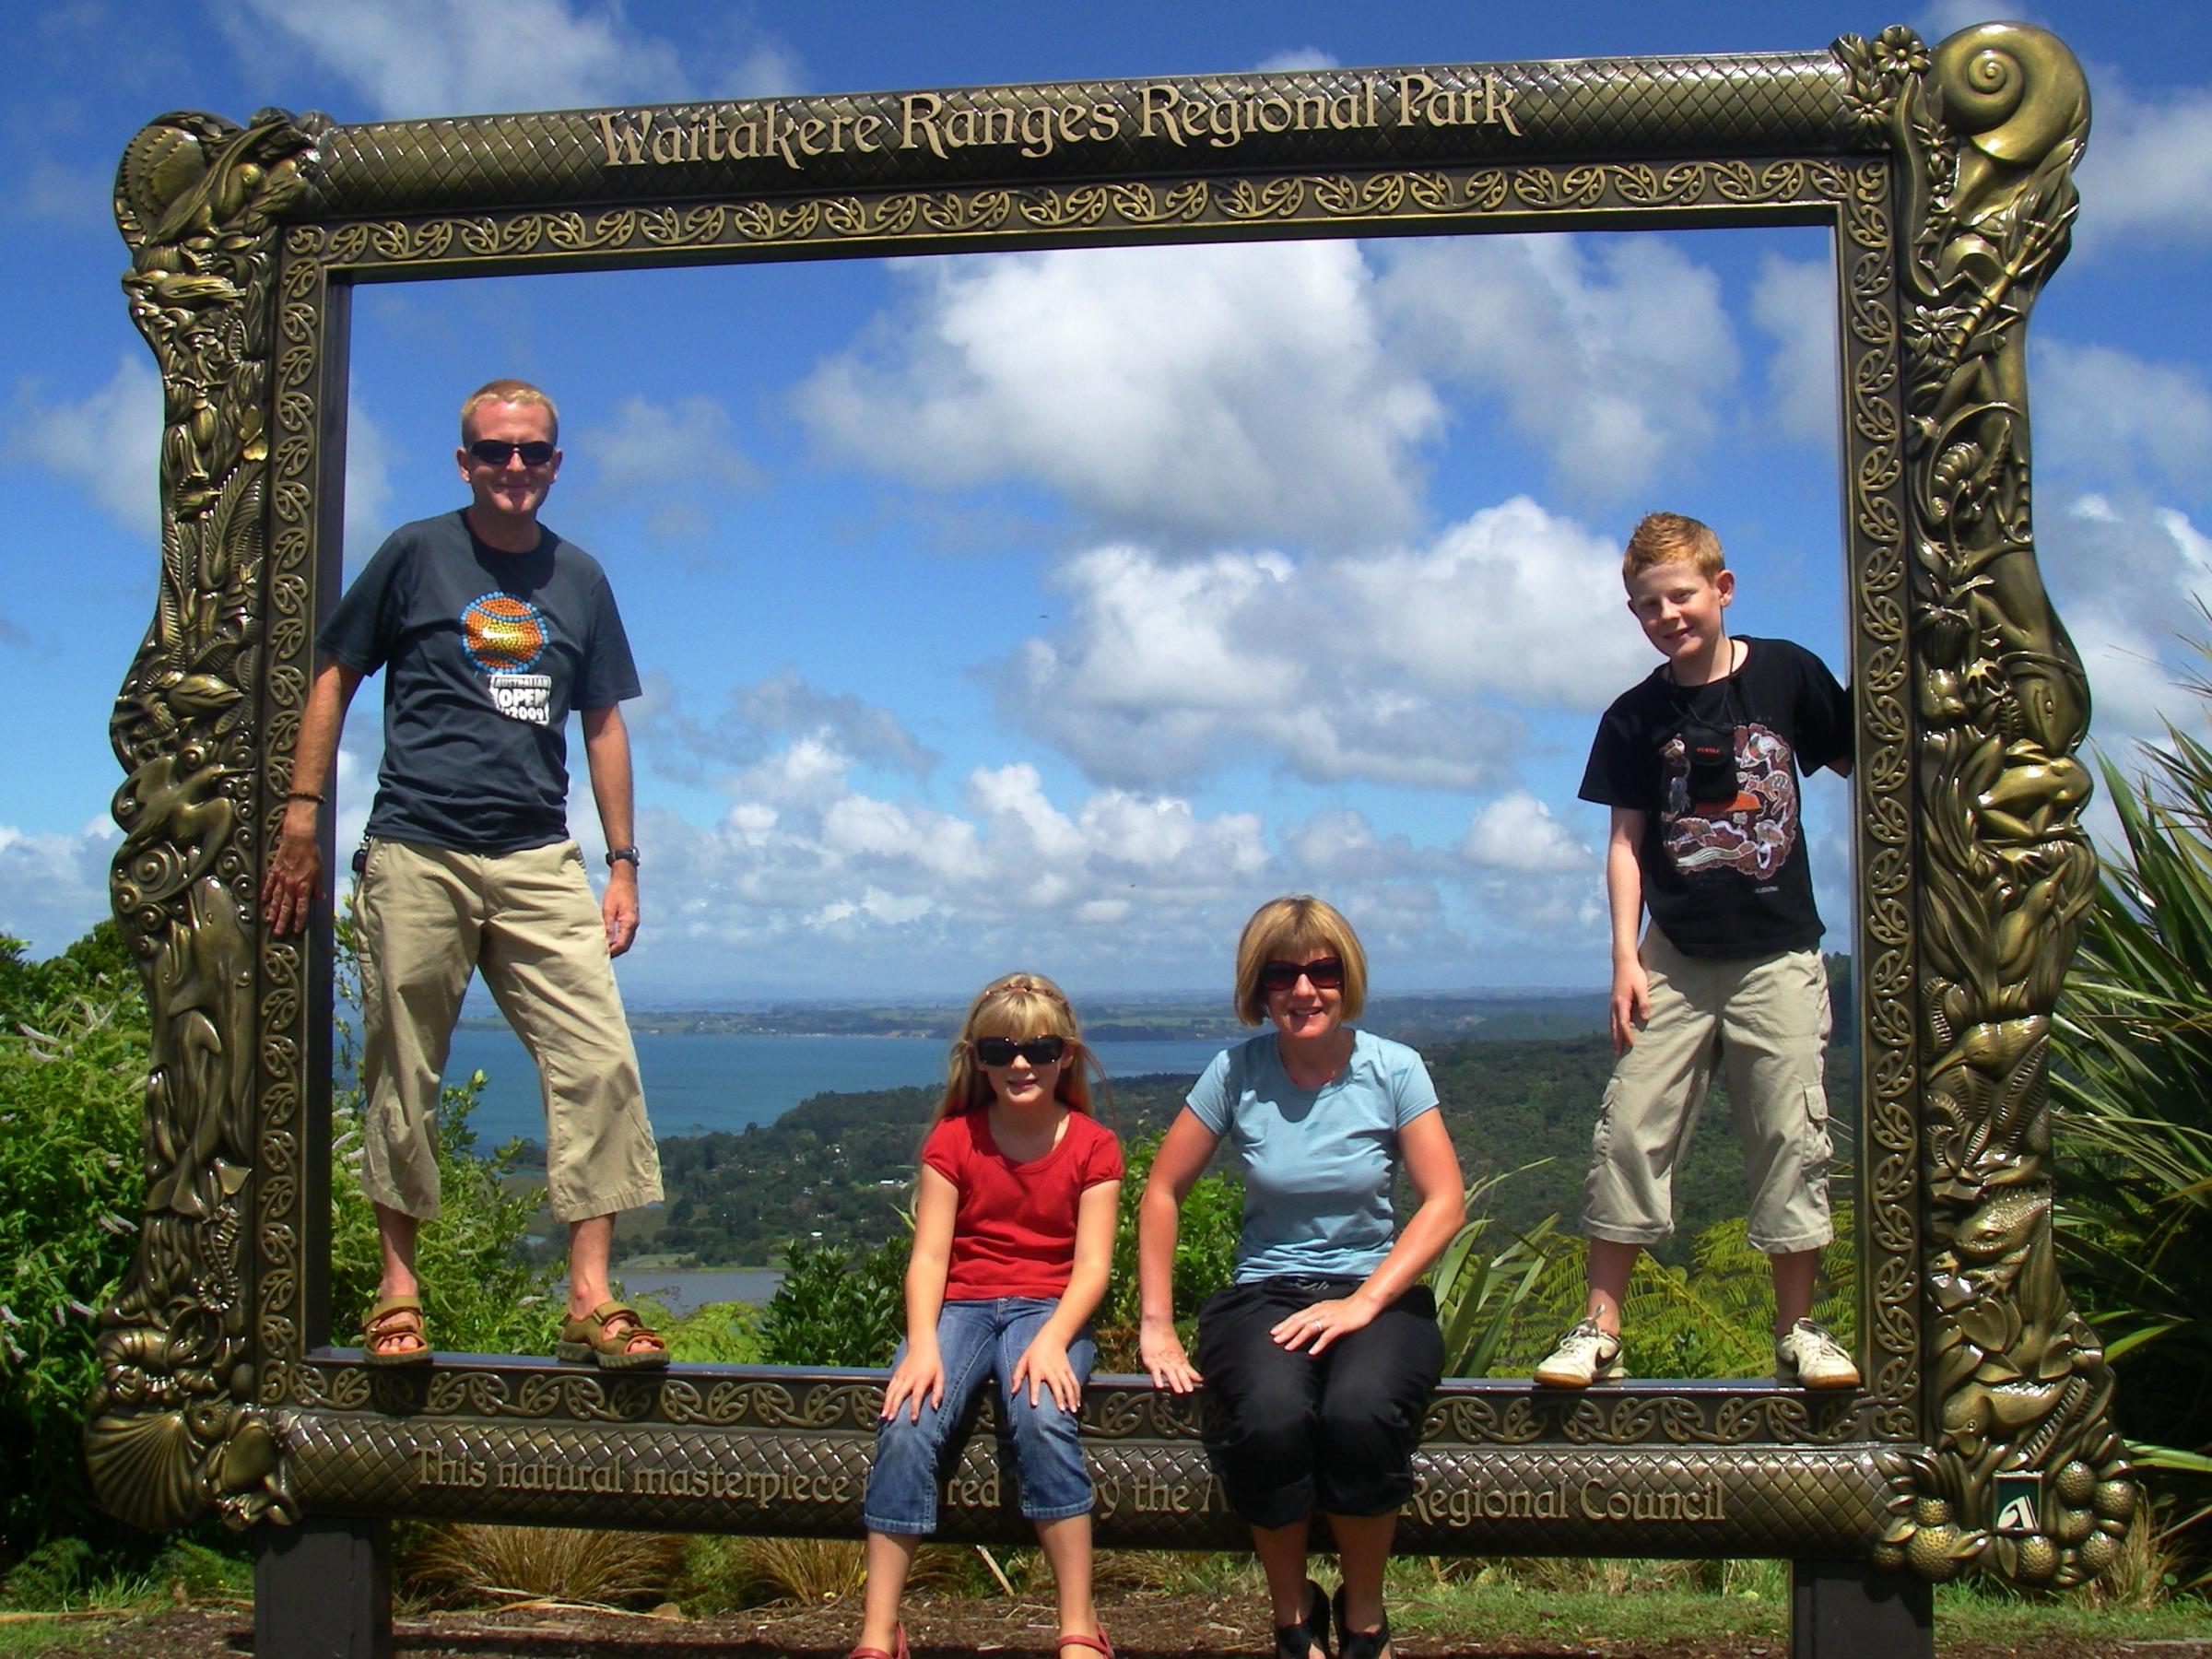 La famille Pilbeam a visité plus d'une douzaine de pays, y compris une escale au parc régional de Waitakere Ranges en Nouvelle-Zélande.